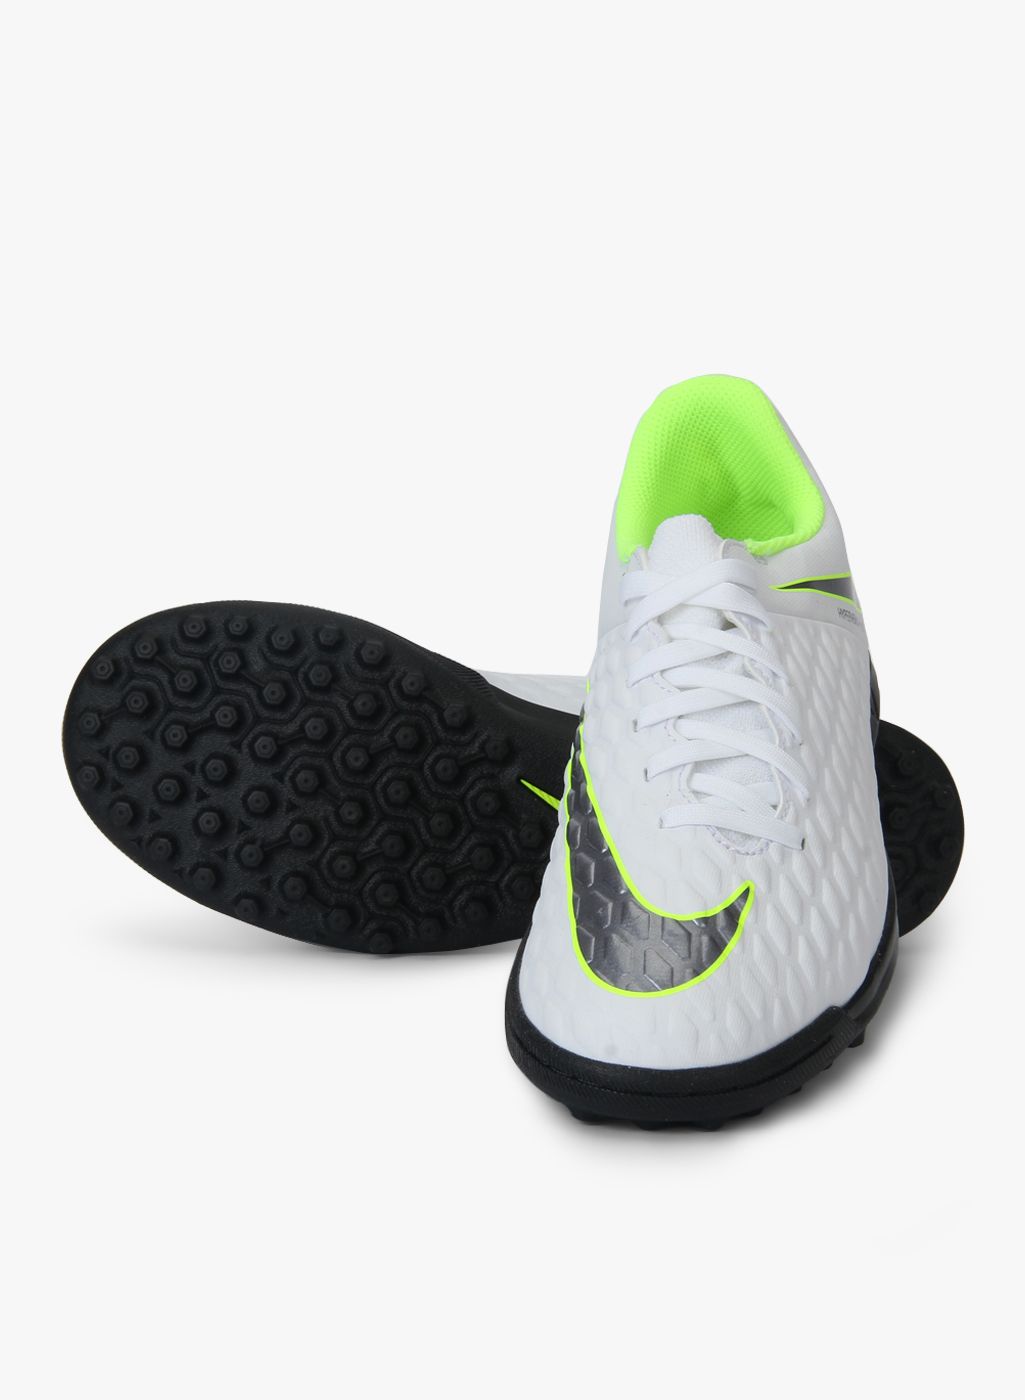 Soccer Shoes Nike Hypervenom Phantom 3 DF AG